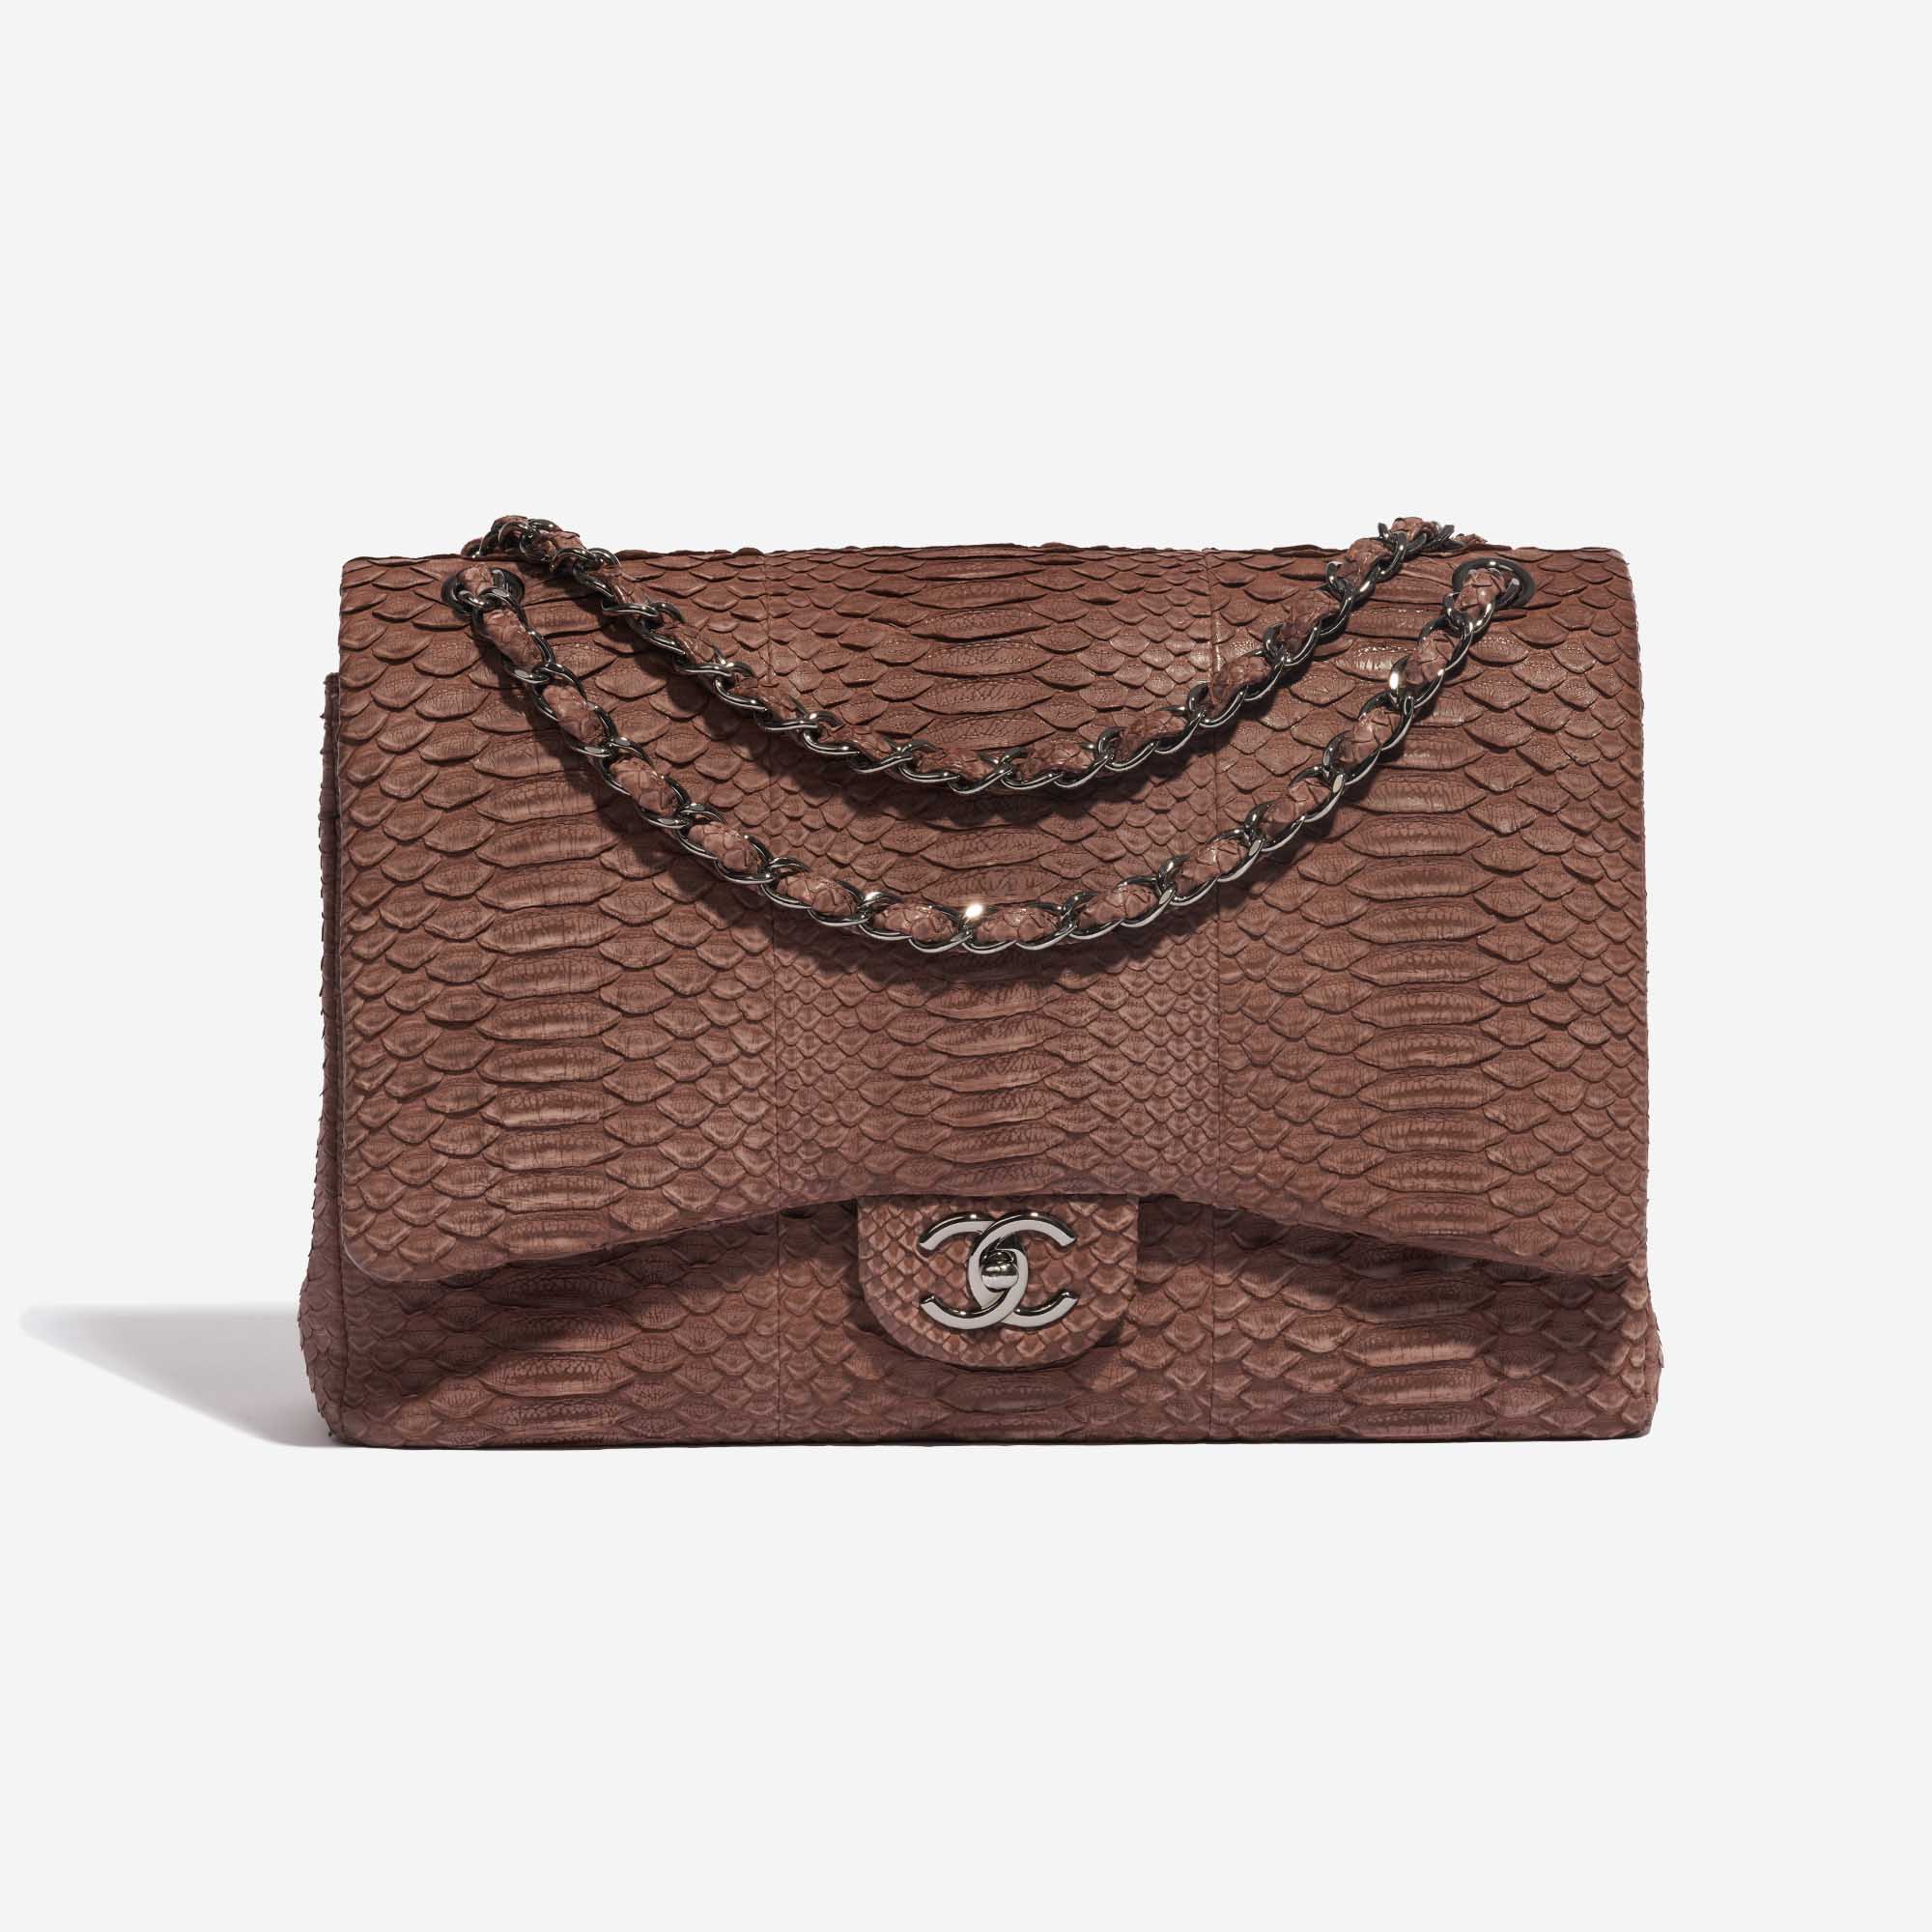 Pre-owned Chanel Tasche Timeless Maxi Python Braun Braun Front | Verkaufen Sie Ihre Designer-Tasche auf Saclab.com